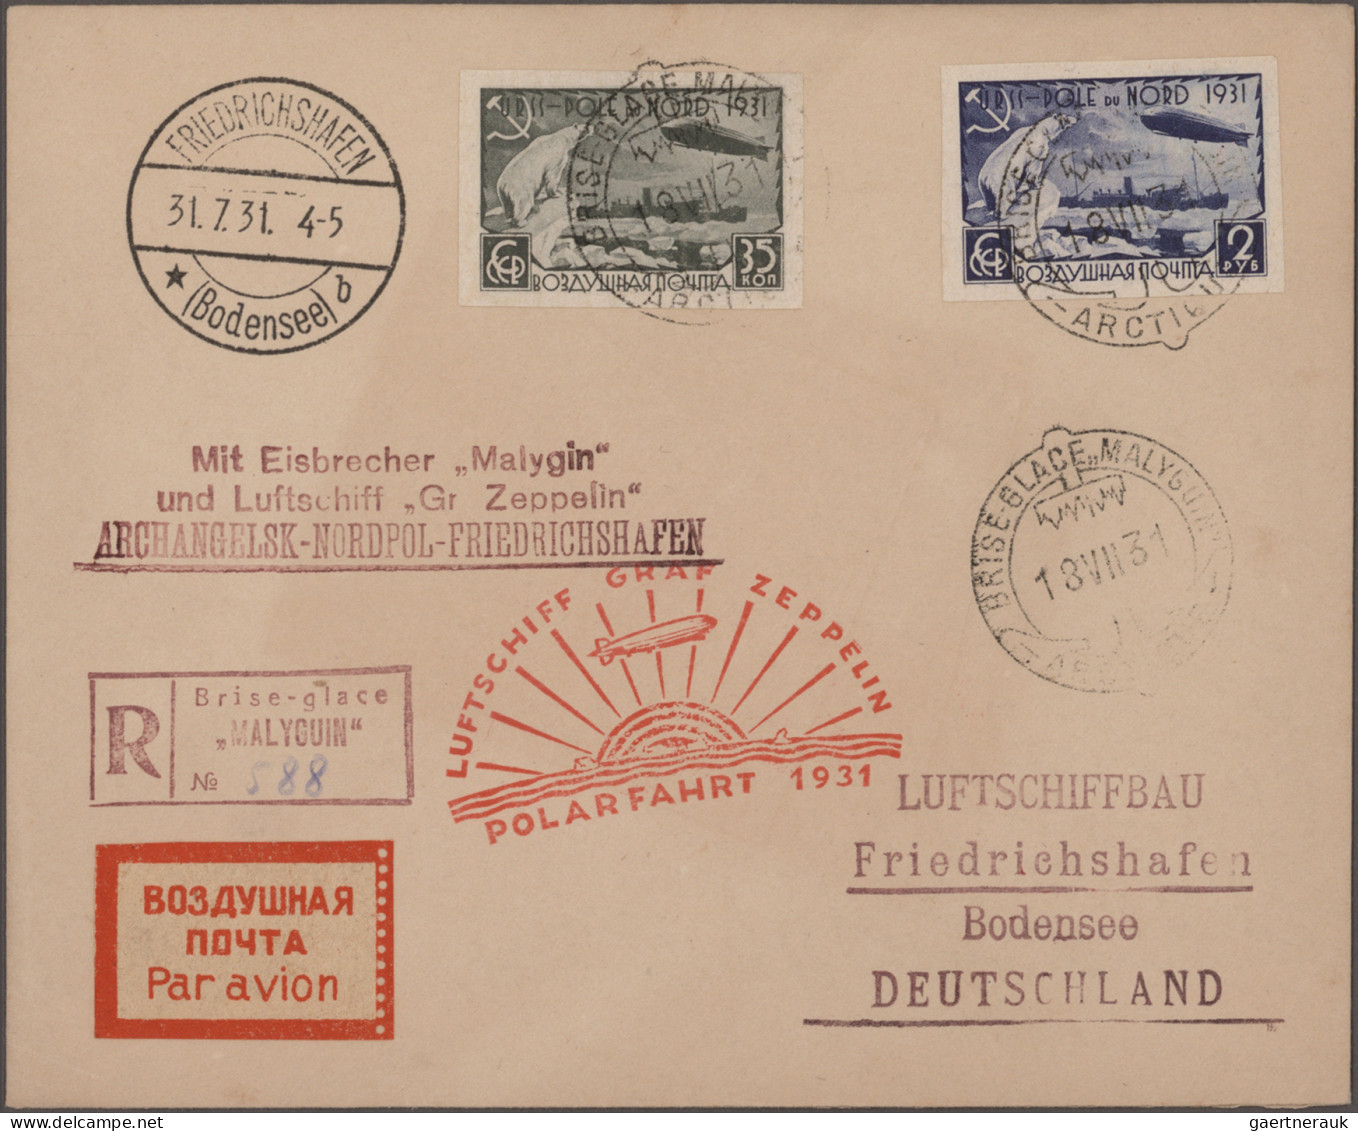 Zeppelin Mail - Germany: 1912/1936, Sammlung mit rund 220 Briefen, Karten und Be